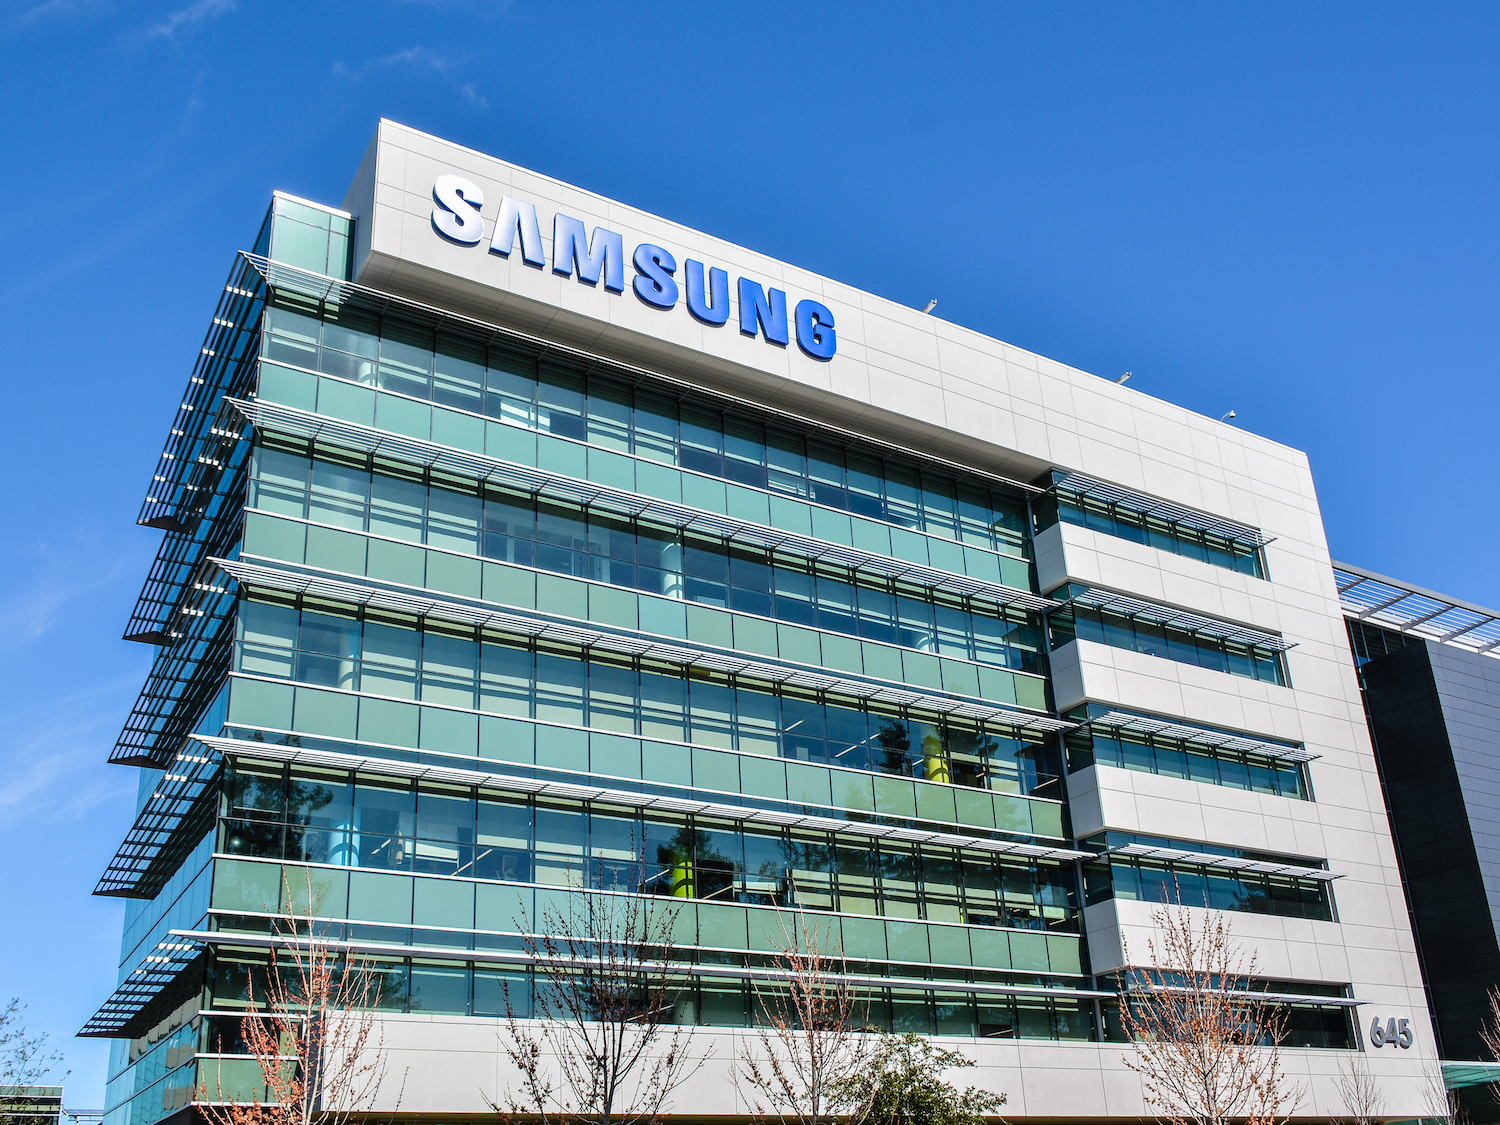 Samsung estima que lucro despencou 60% no primeiro trimestre